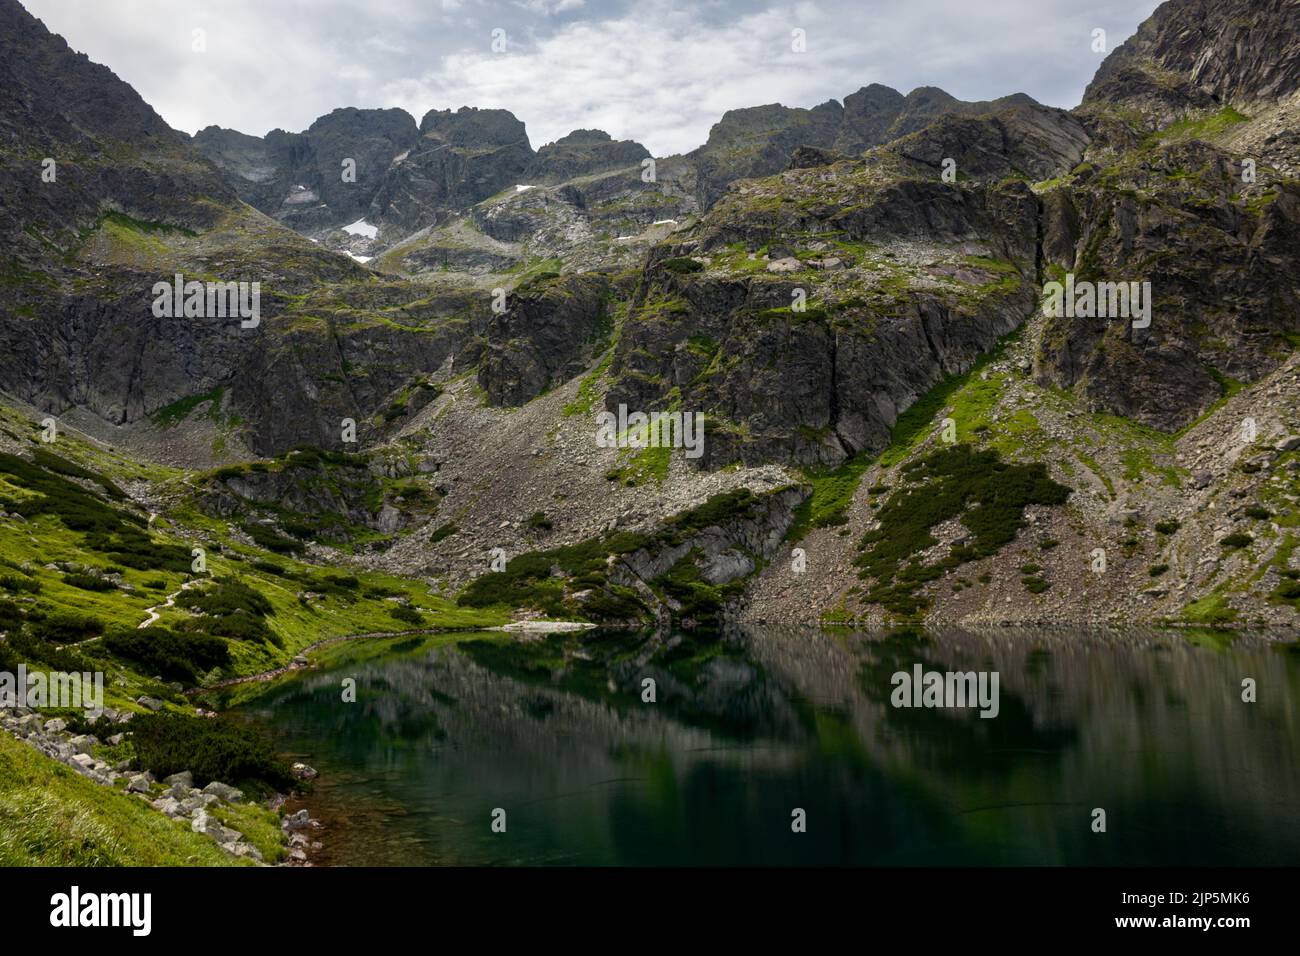 Czarny Staw Gasienicowy lago en una ruta de senderismo en las montañas polacas de Tatry, cerca de Zakopane Foto de stock